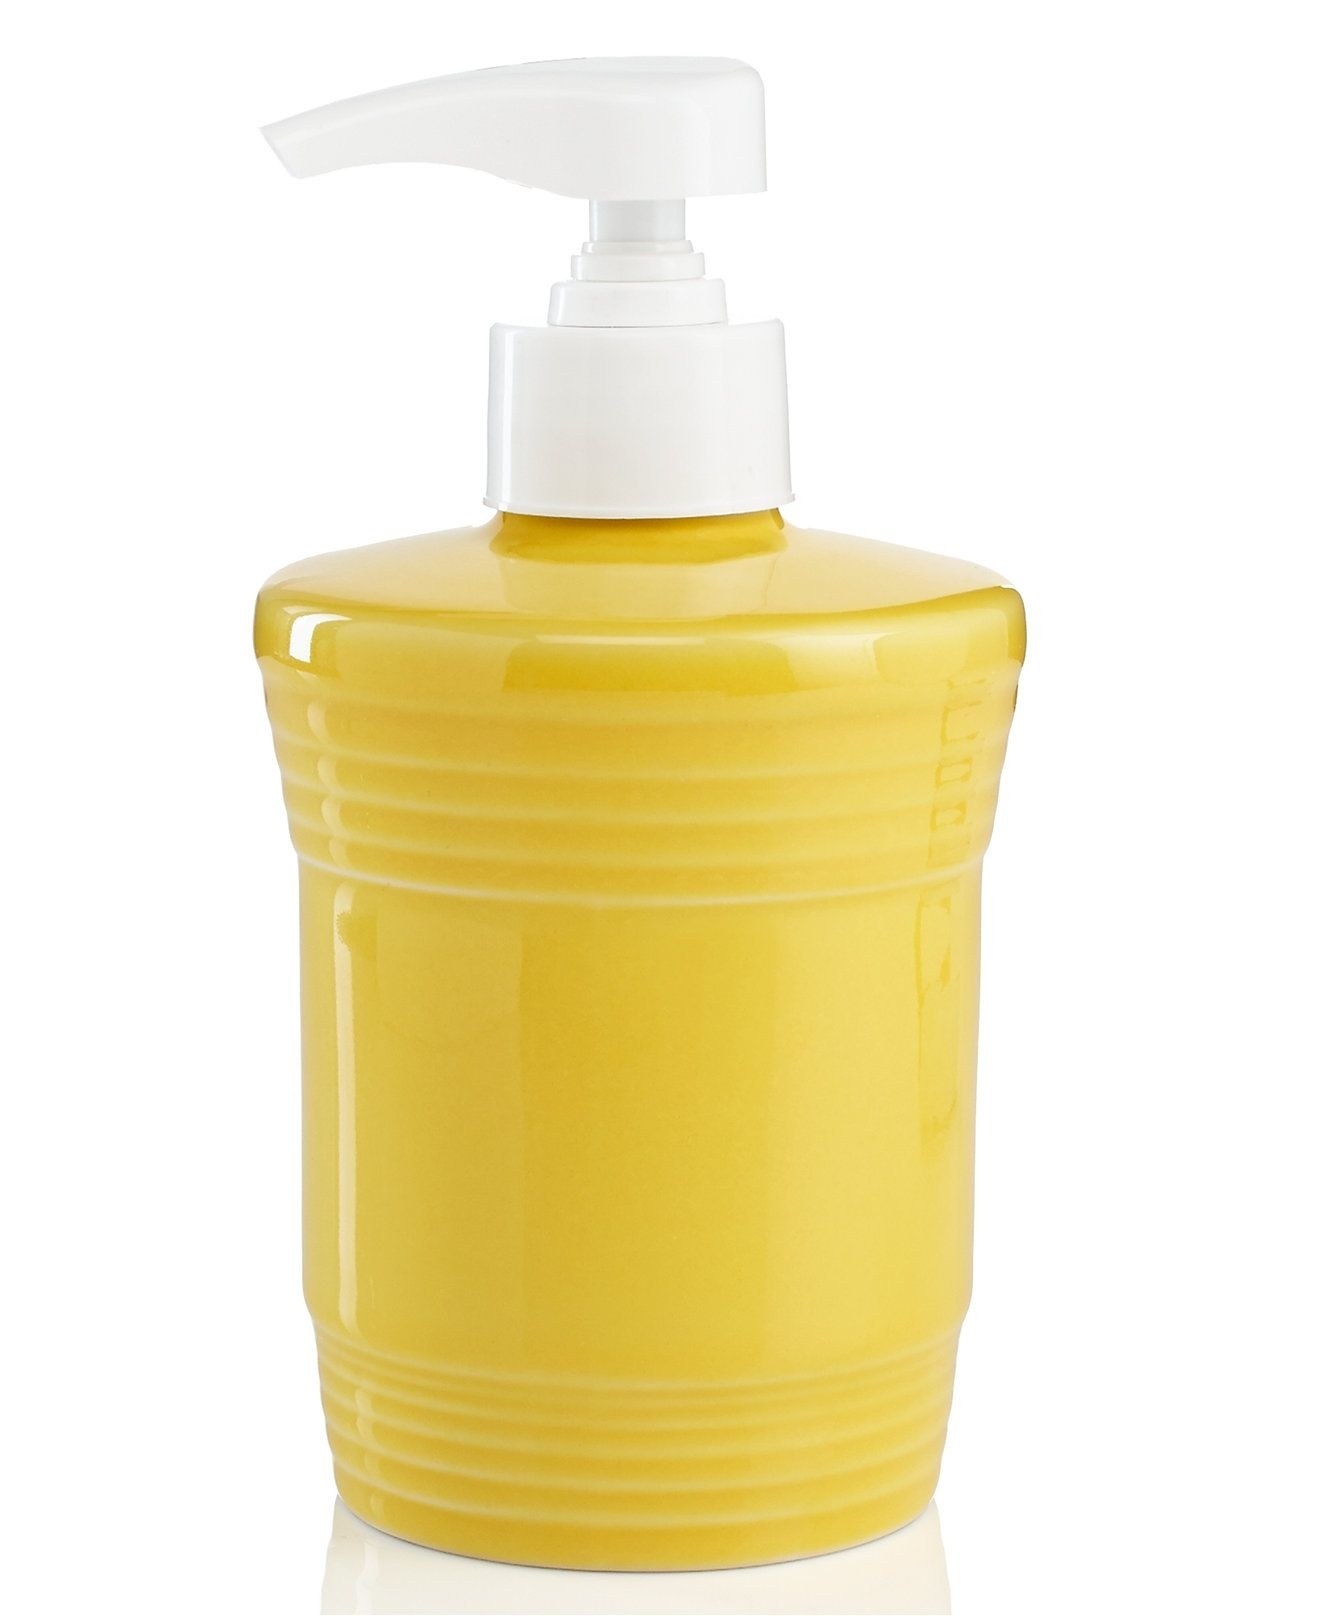 https://foter.com/photos/title/yellow-soap-dispenser.jpg